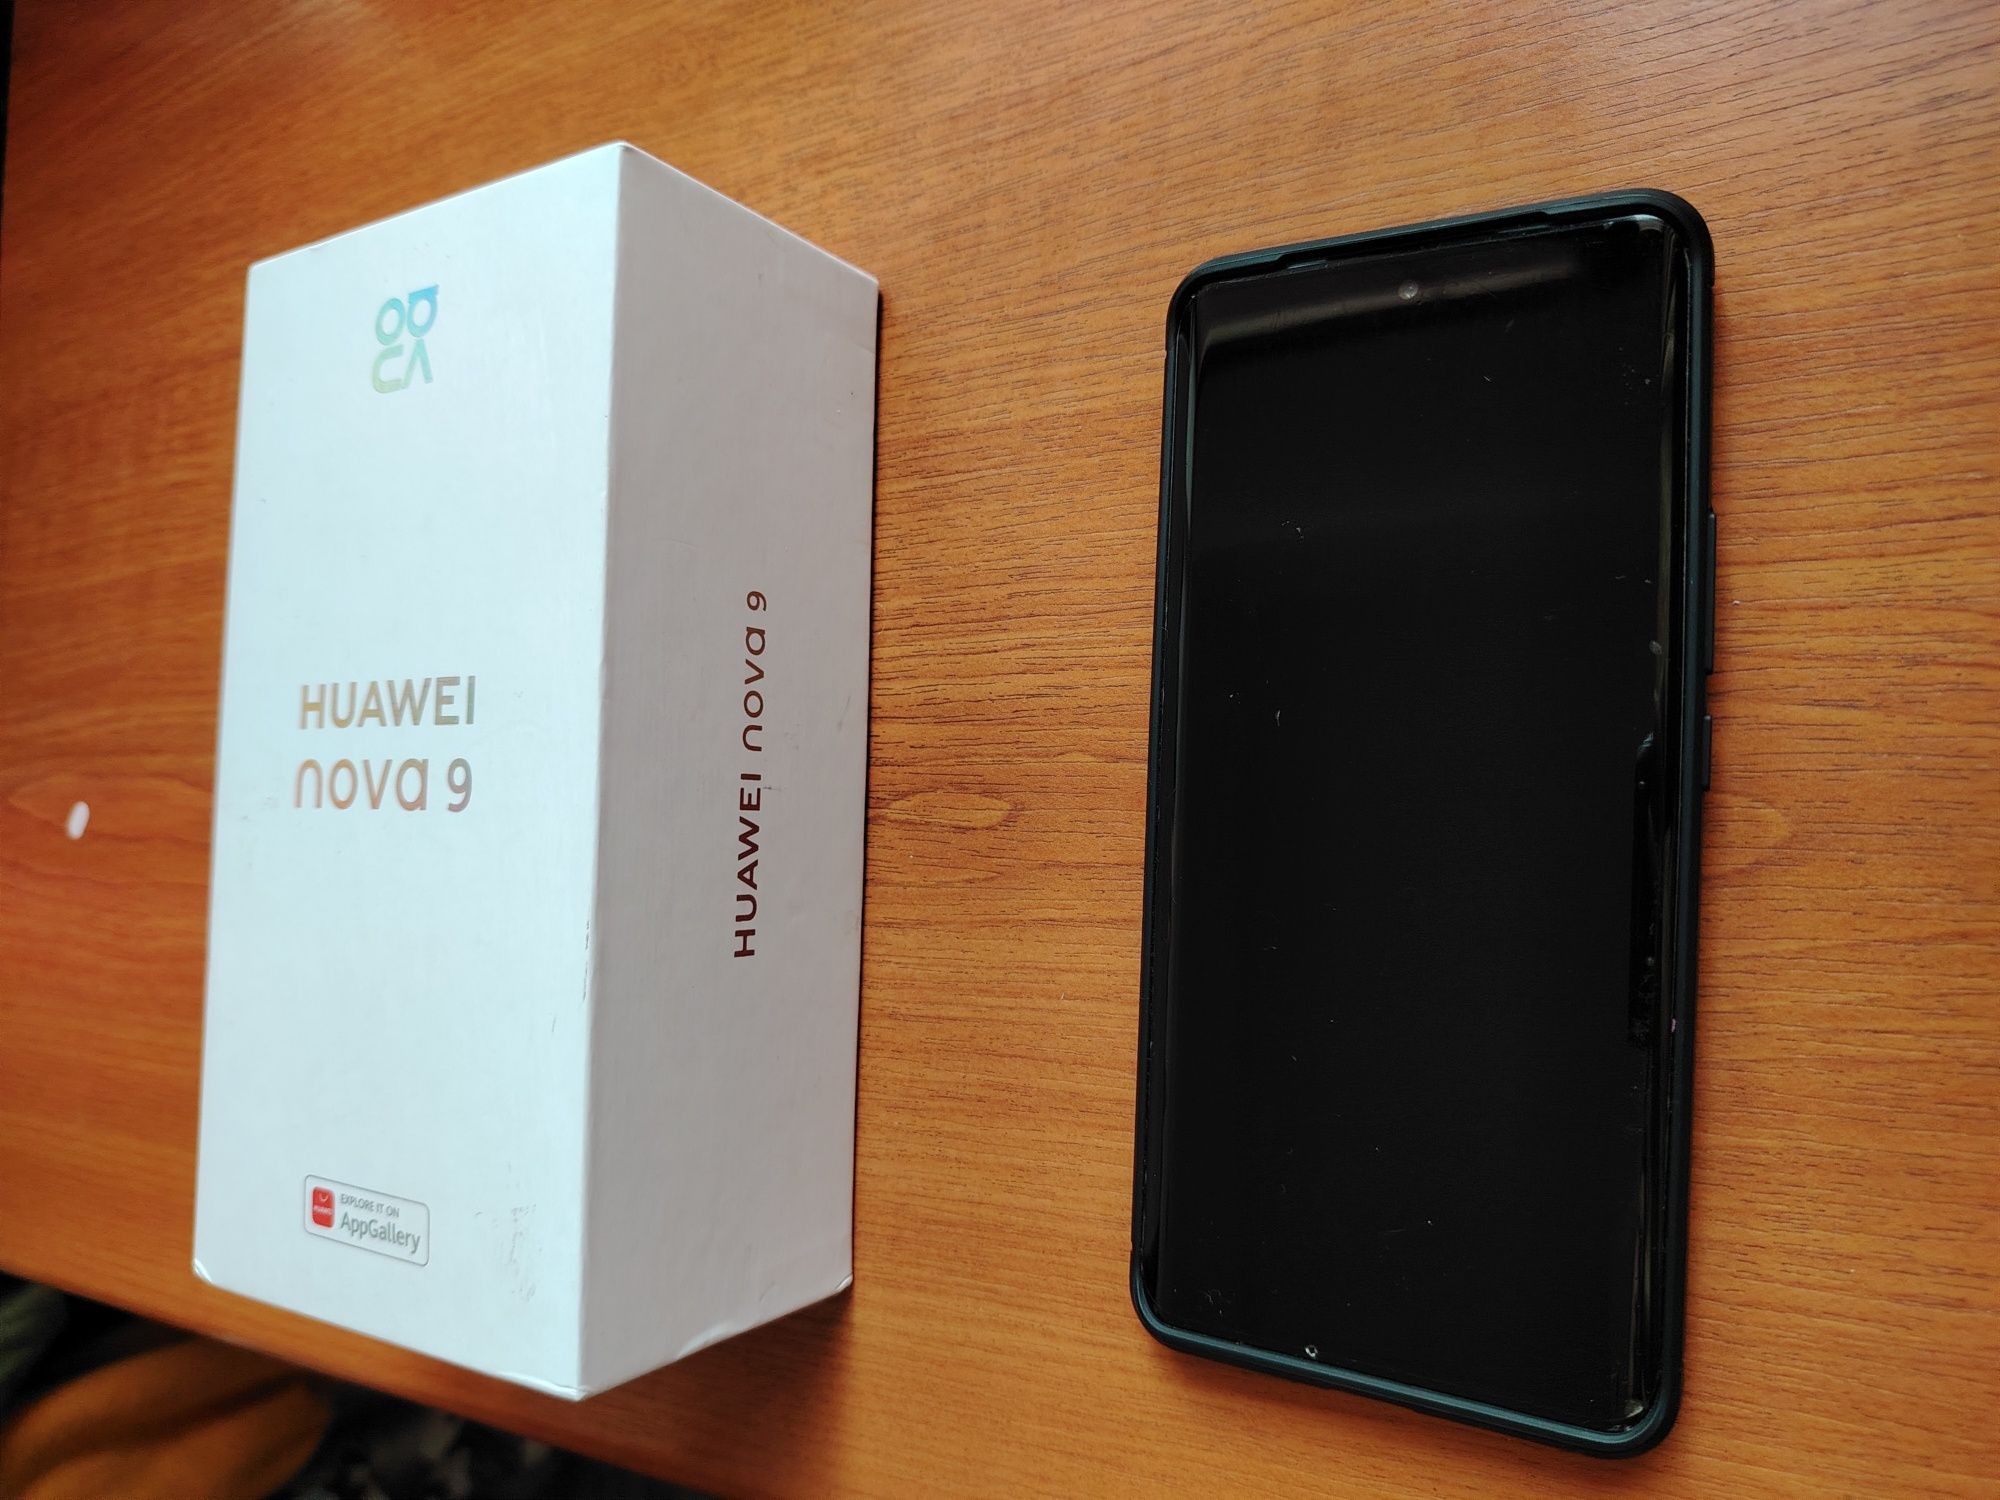 Telefon mobil Huawei Nova 9, încă în garanție. Dual SIM, 8GB RAM, 128G